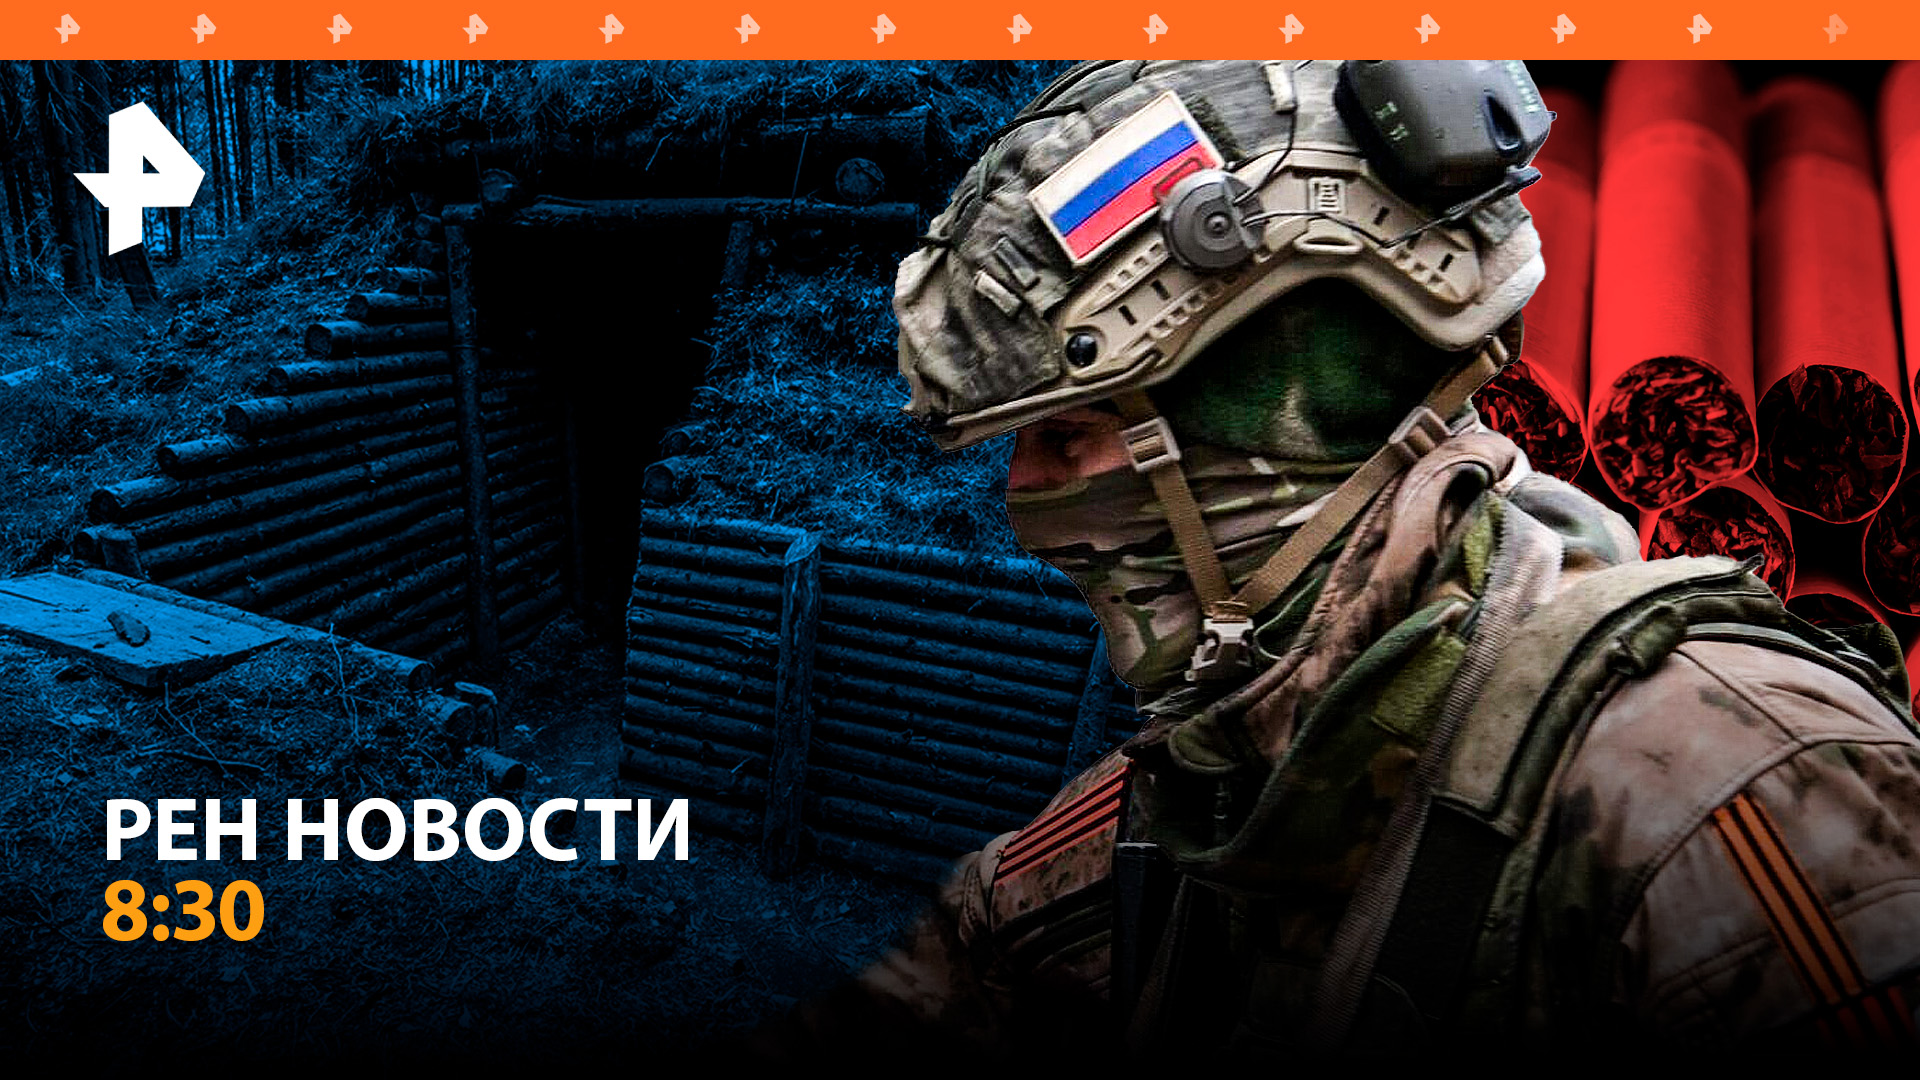 Раненый боец РФ 3 недели выживал в окопе. Новые правила мобилизации на Украине / РЕН Новости 8:30